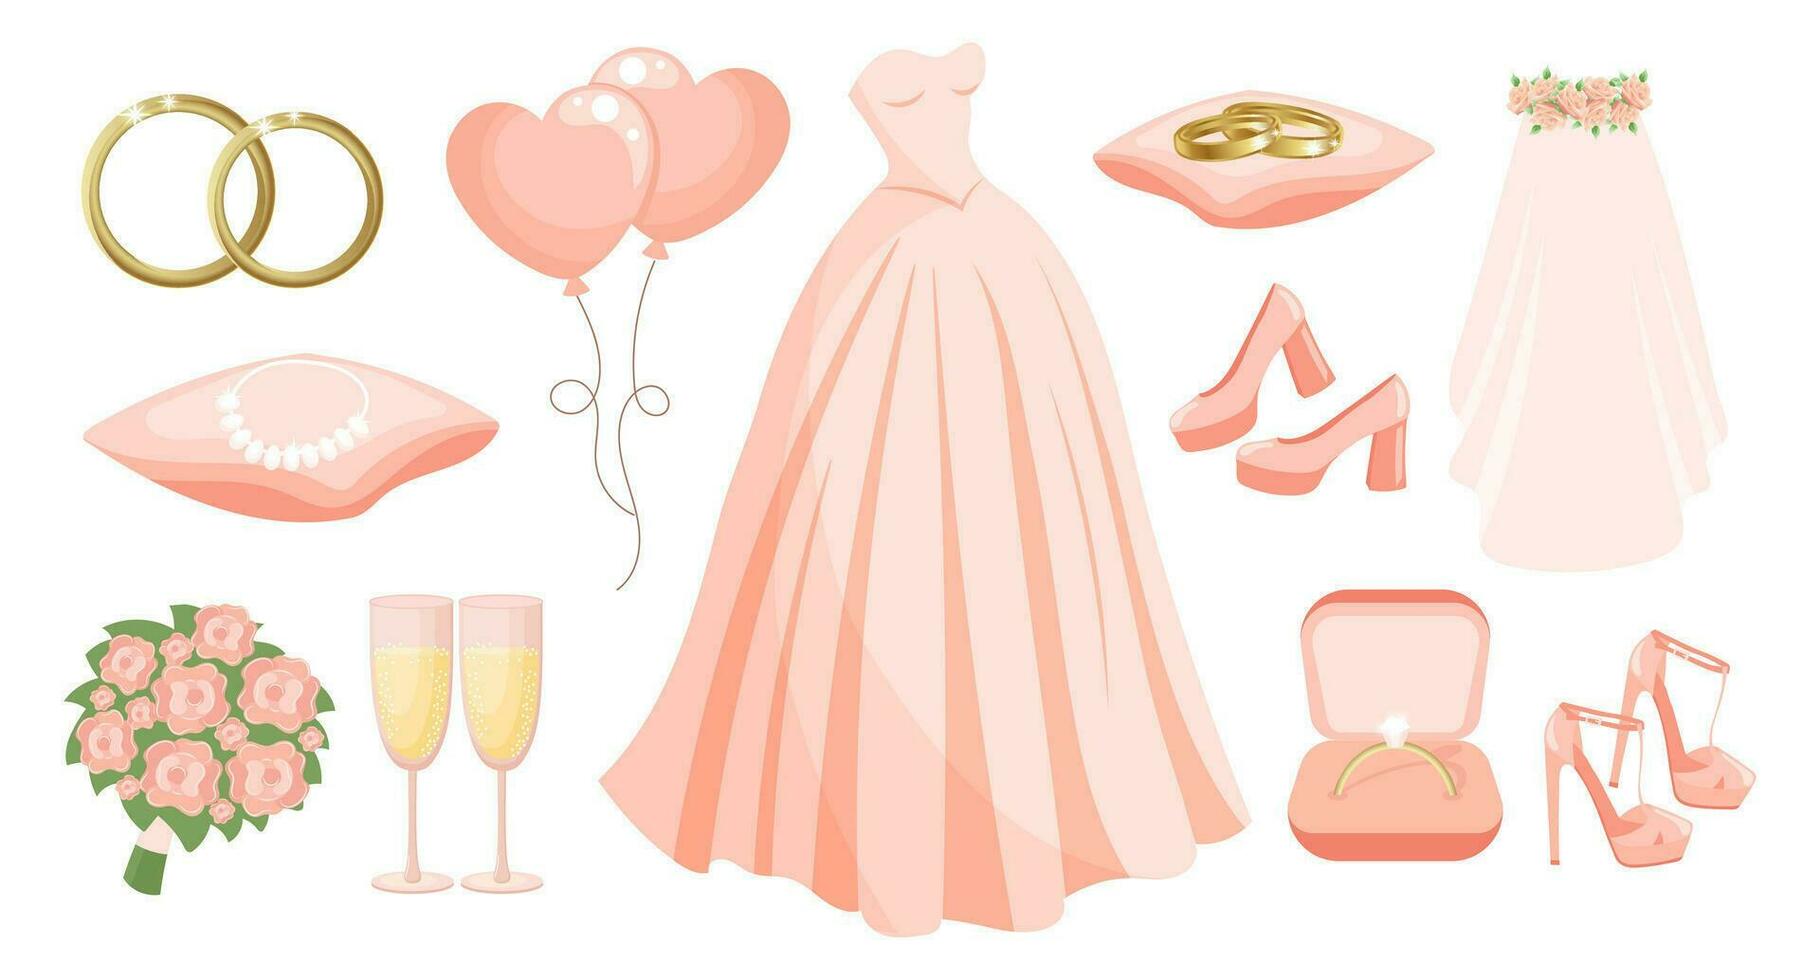 bruiloft reeks van kleren en accessoires voor de bruid, bruiloft jurk, ringen, ketting, schoenen, sluier, Champagne bril, boeket, ballonnen. ontwerp elementen, vector